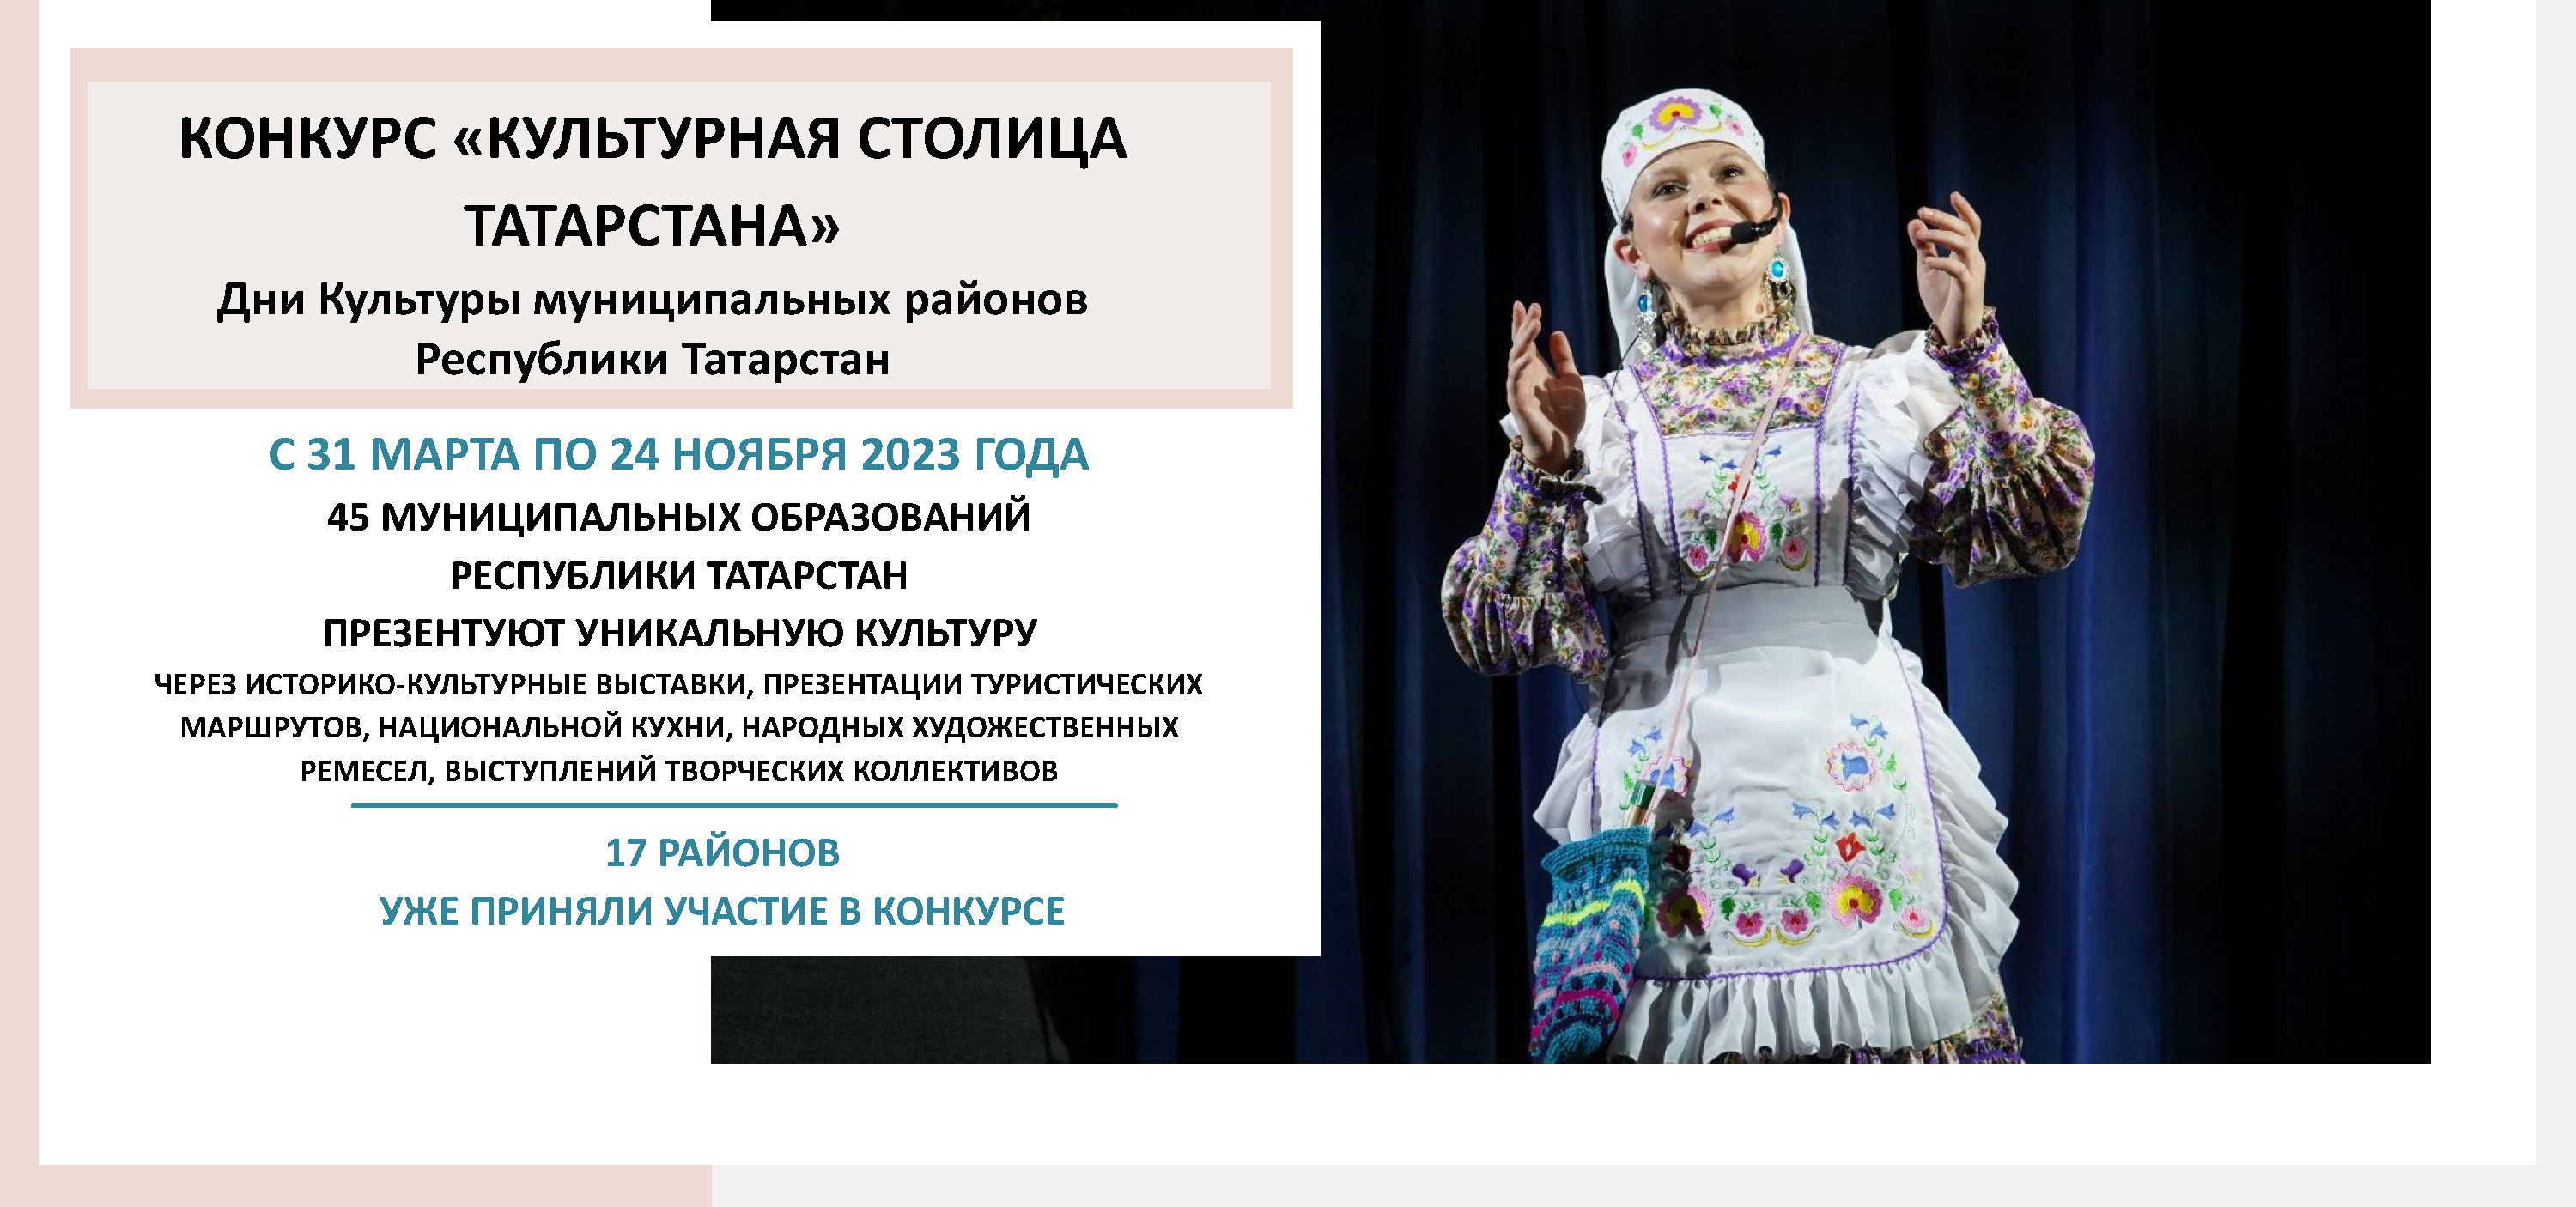 9 сентября пройдет День культуры Высокогорского района